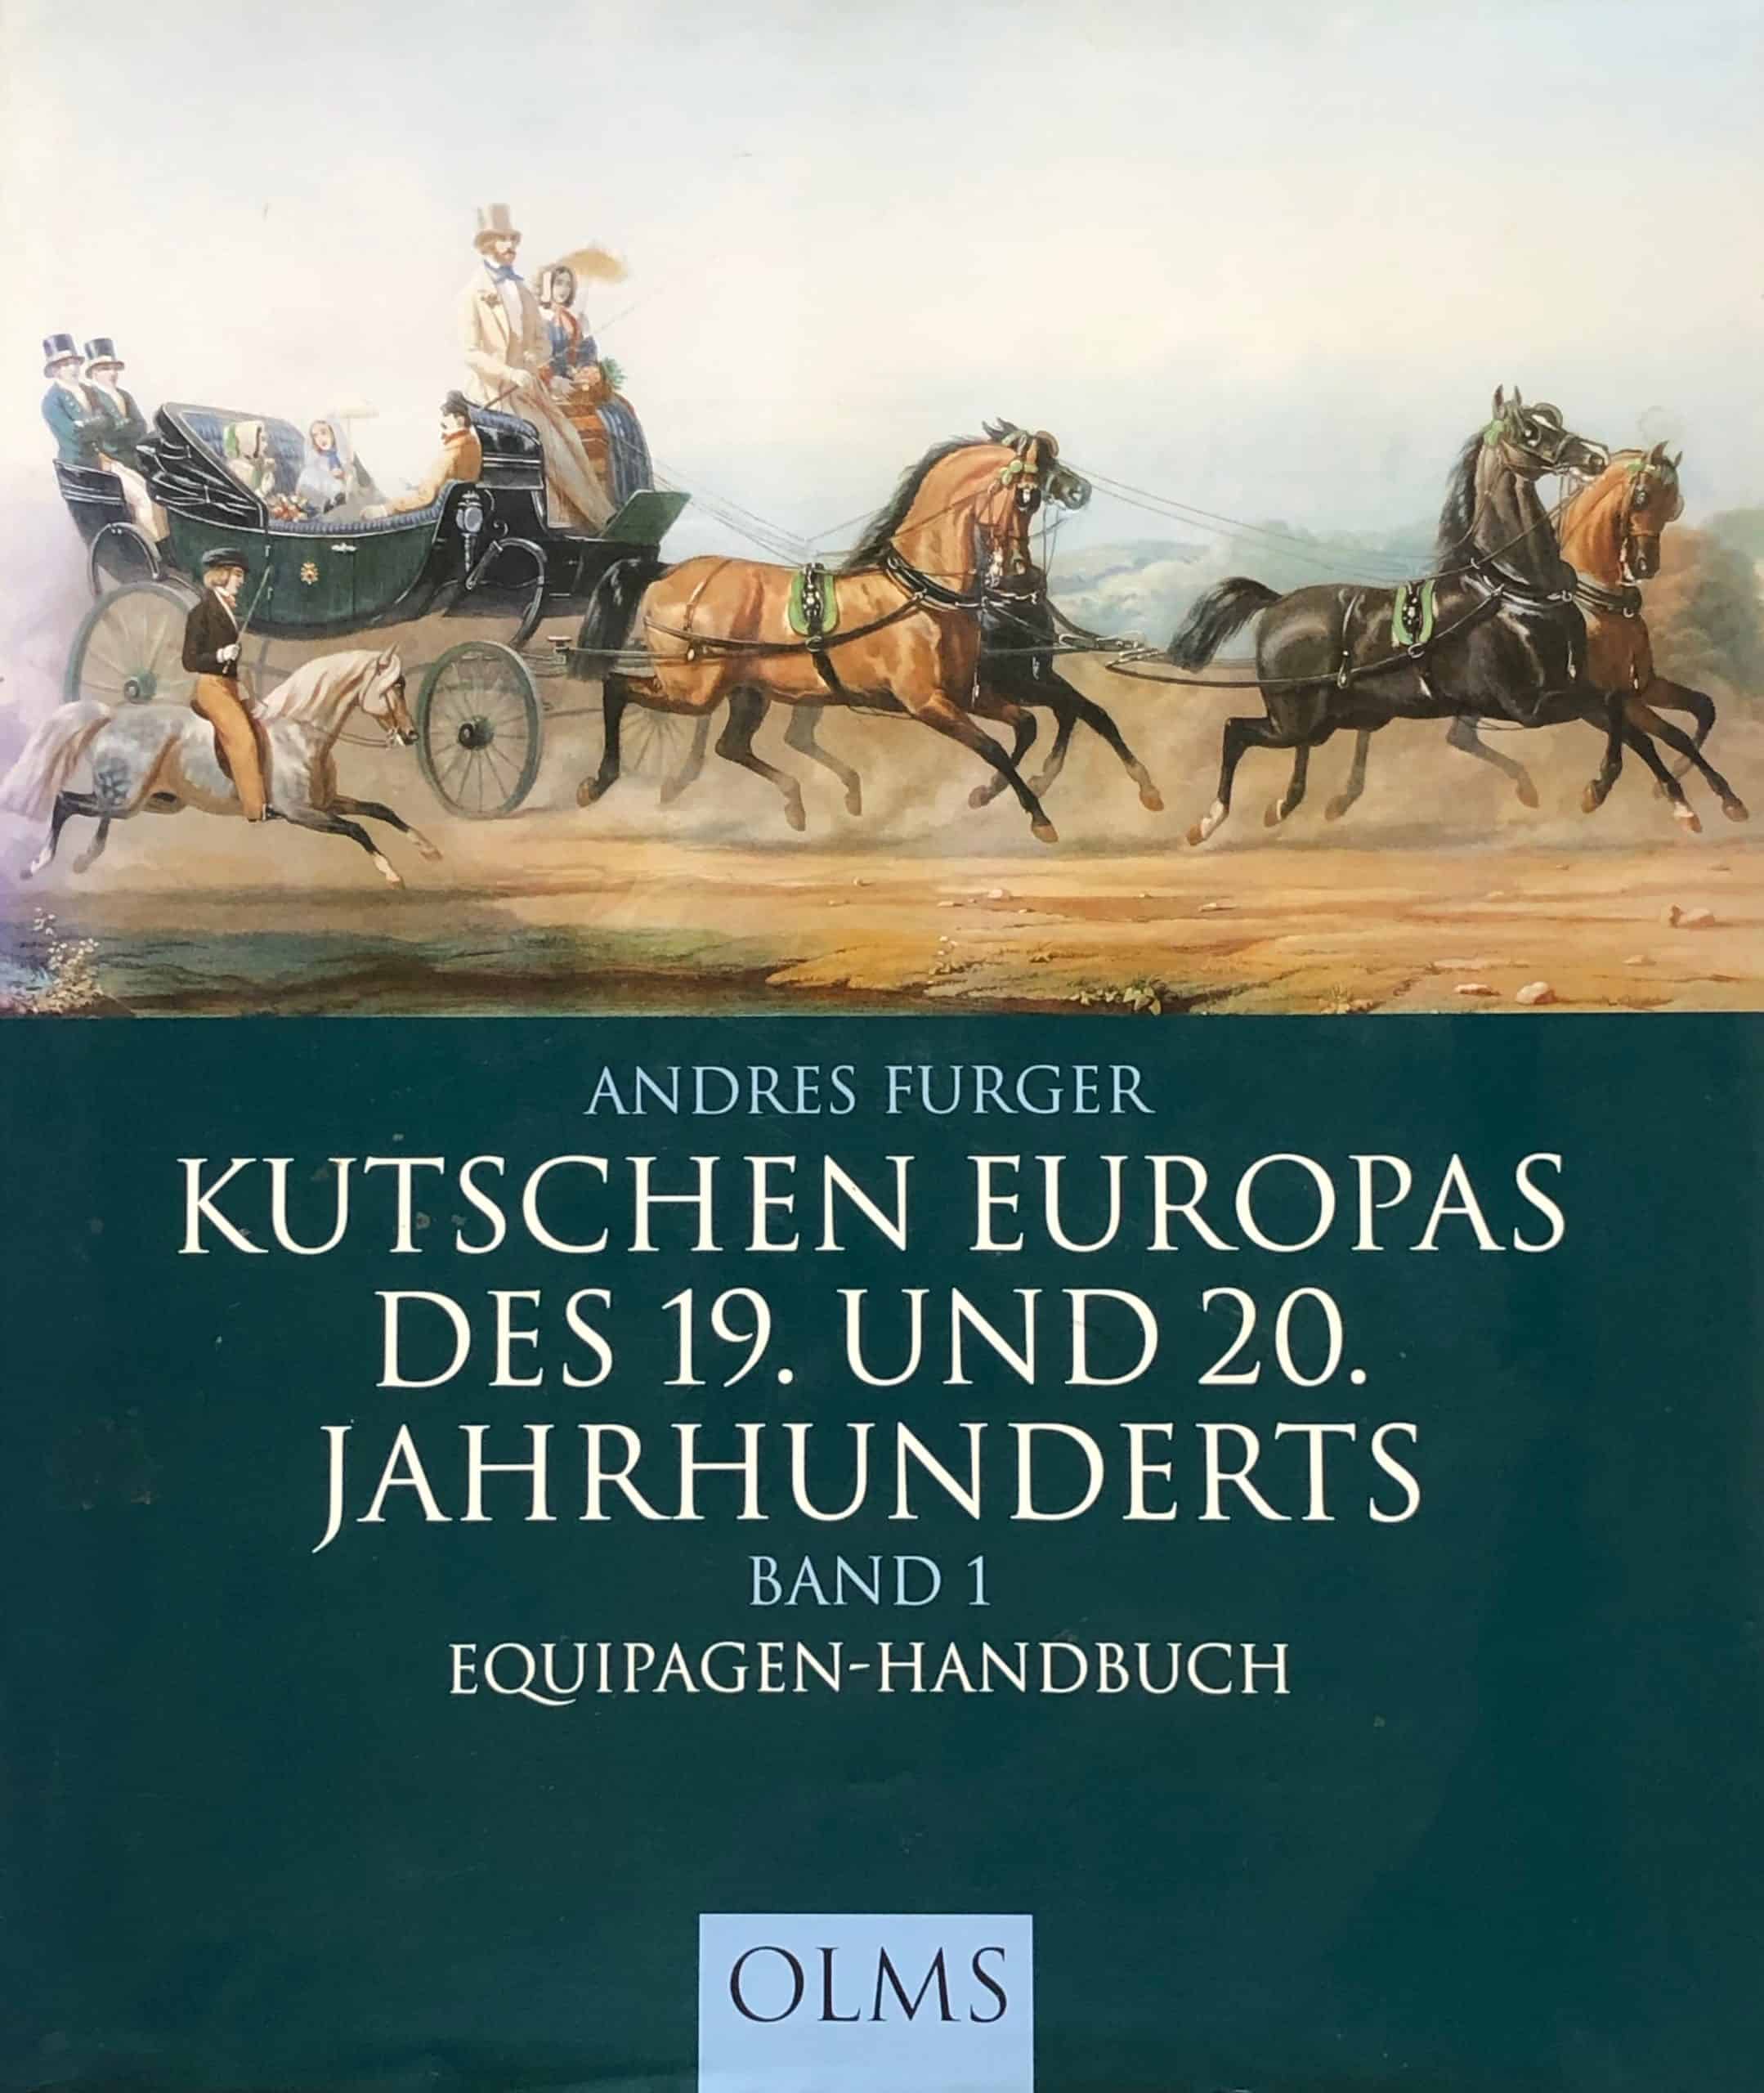 Andres Furger - Kutschen Europas des 19. und 20. Jahrhunderts - Equipagen Handbuch - historische Wagen